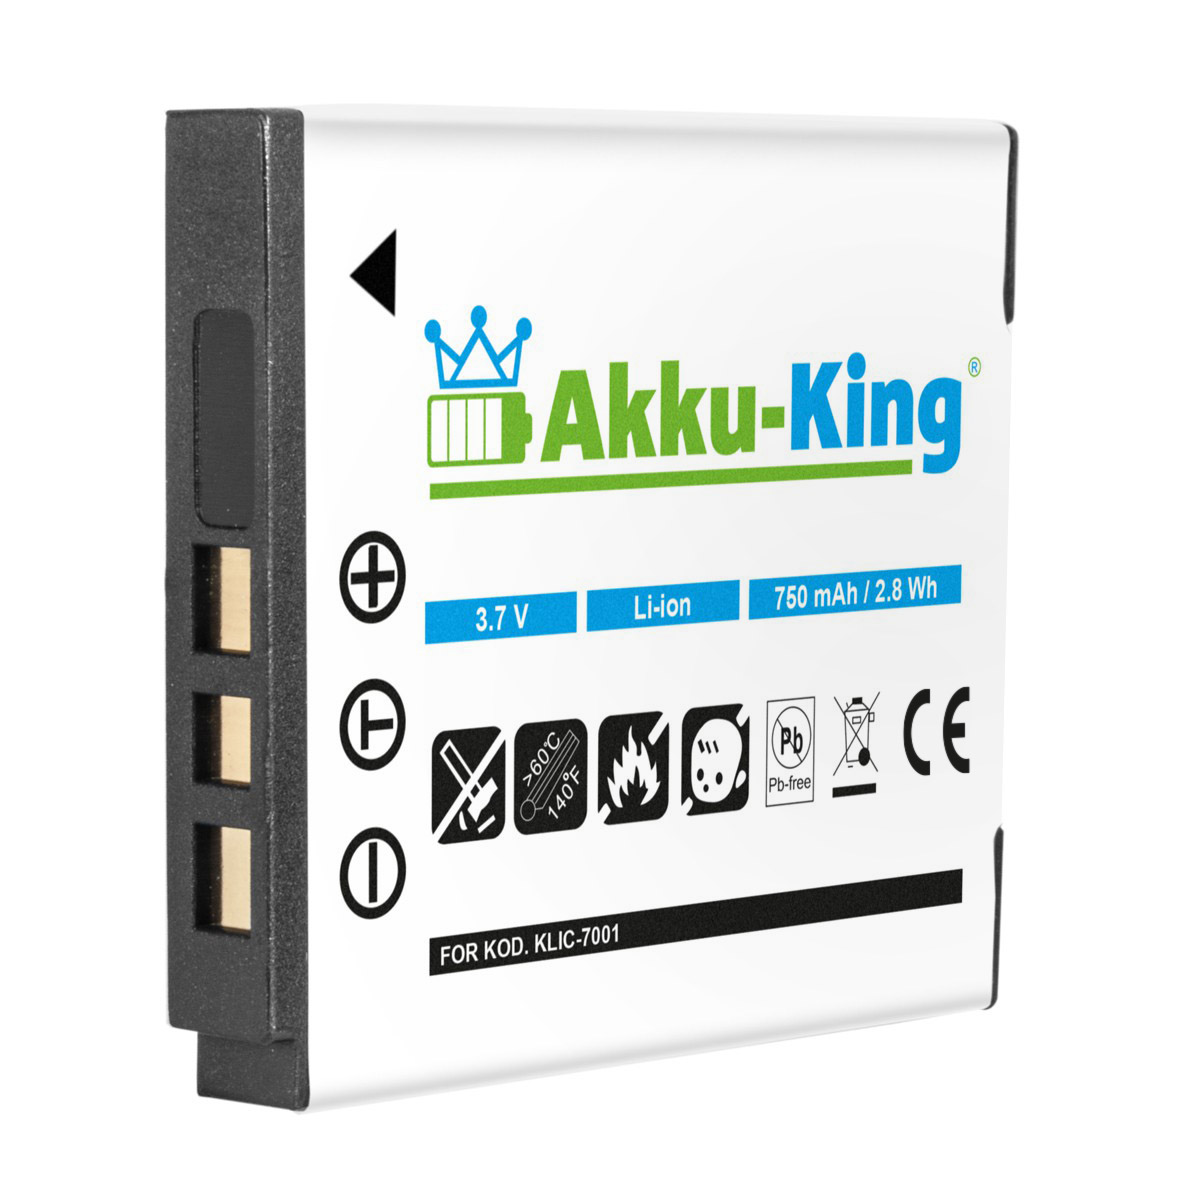 AKKU-KING Akku Klic-7001 Li-Ion kompatibel Kodak Volt, Kamera-Akku, 3.7 750mAh mit